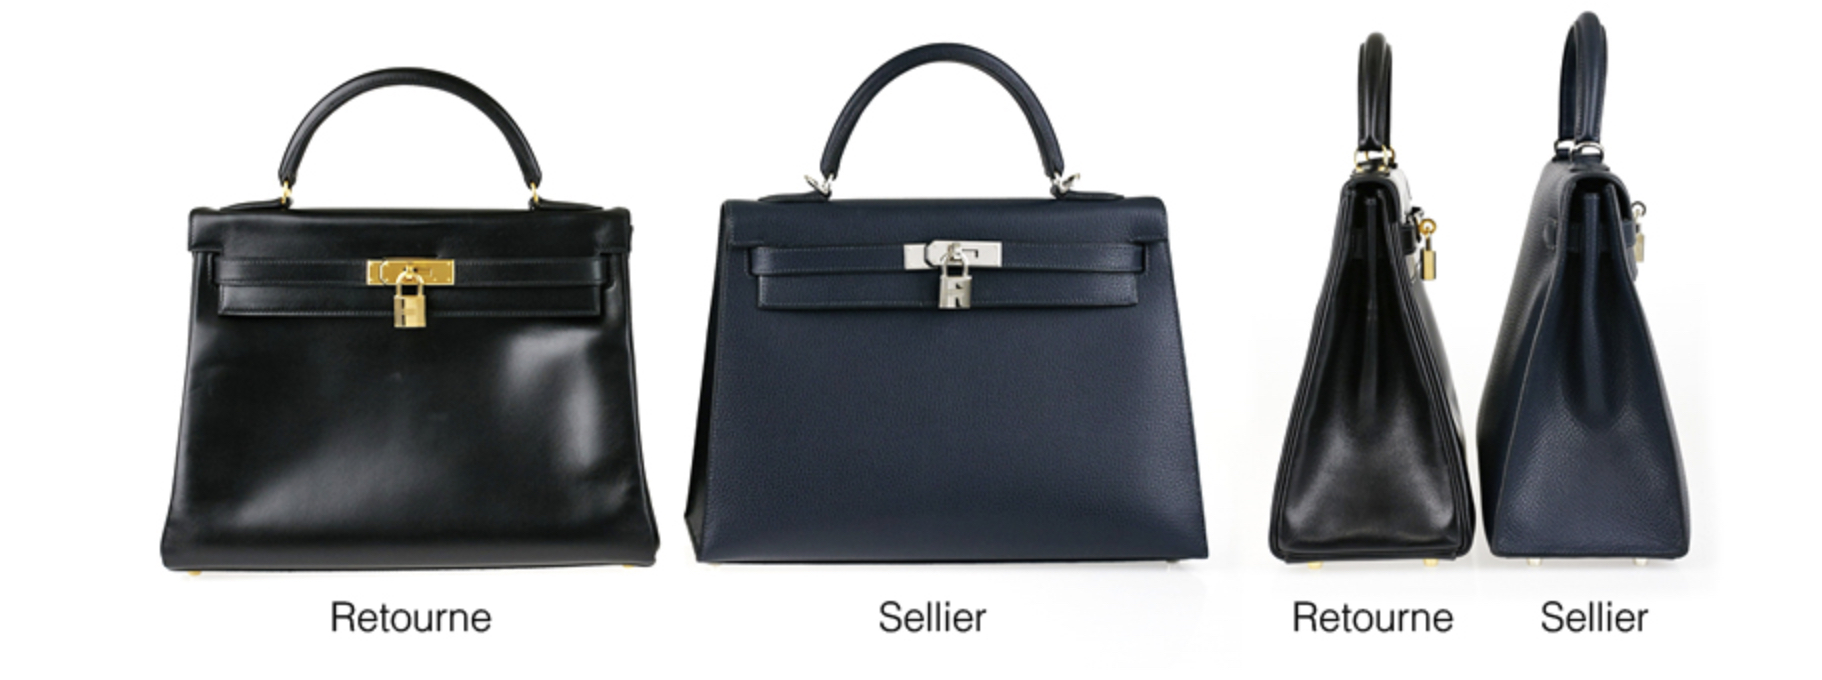 C’est dans les années 80 qu’Hermès se met à proposer deux versions de son sac Kelly. L’un rigide dit “sellier” et l’autre souple dit “retourné”. (Source : yoogiscloset)